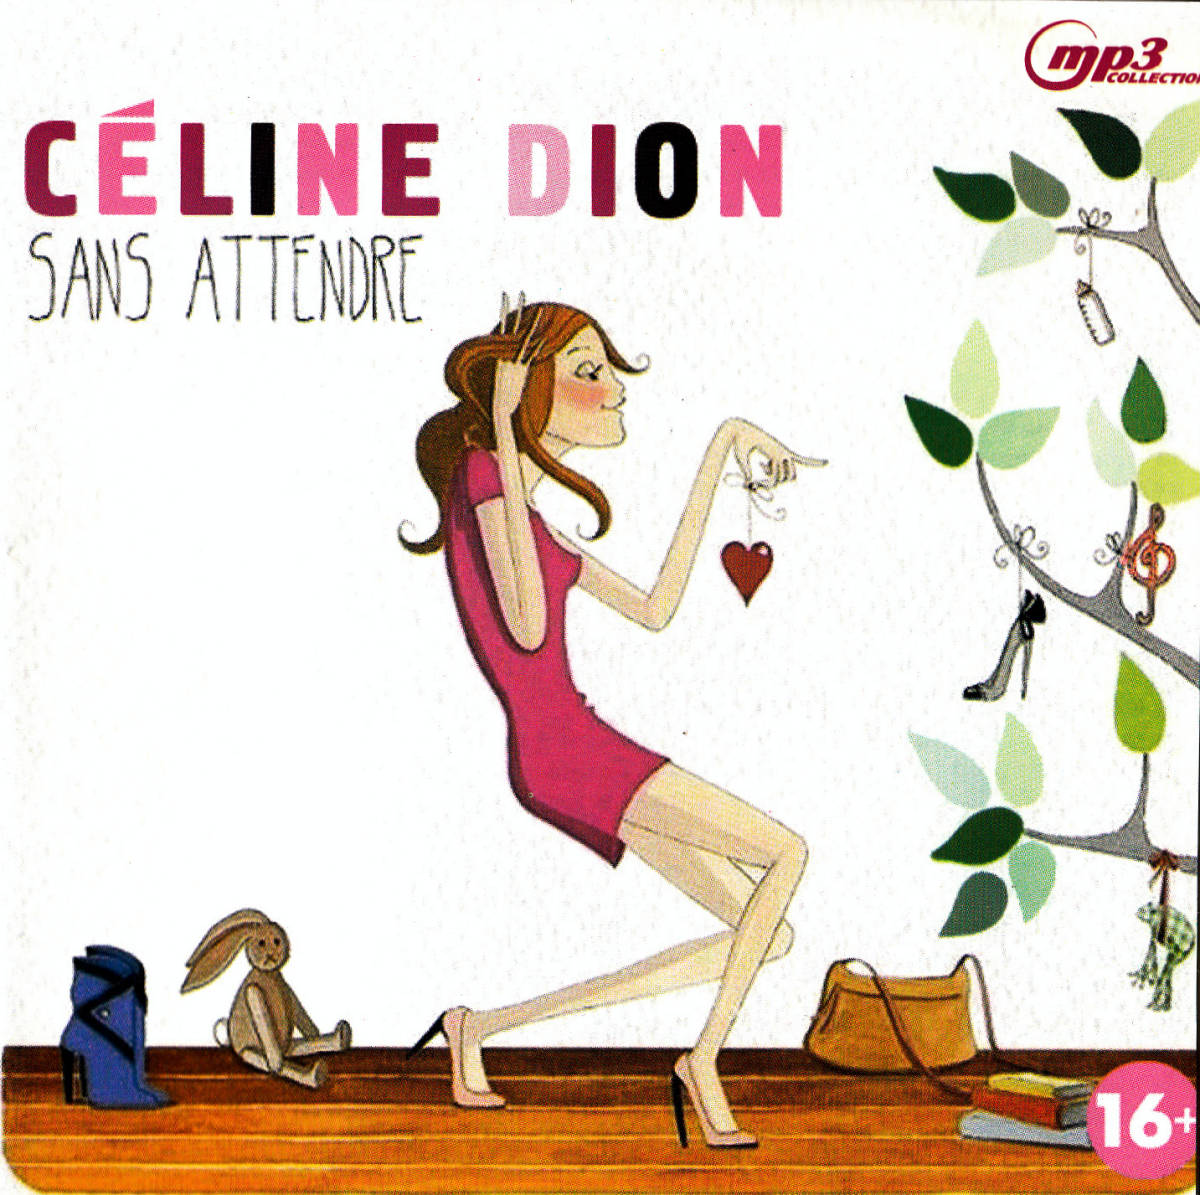 【MP3-CD】 Celine Dion セリーヌ ディオン 12アルバム128曲収録_画像1